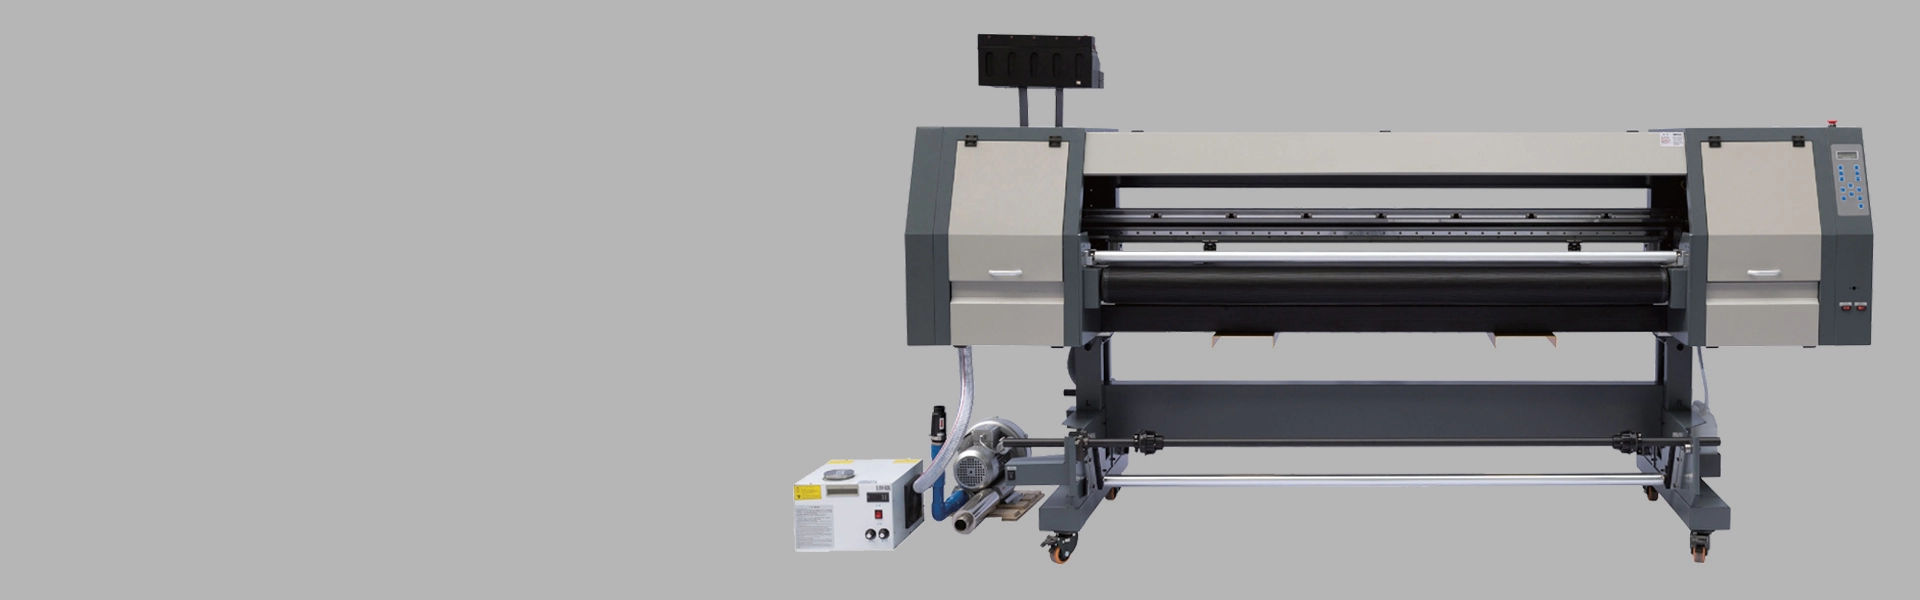 Impresora híbrida UV de 1,8 m